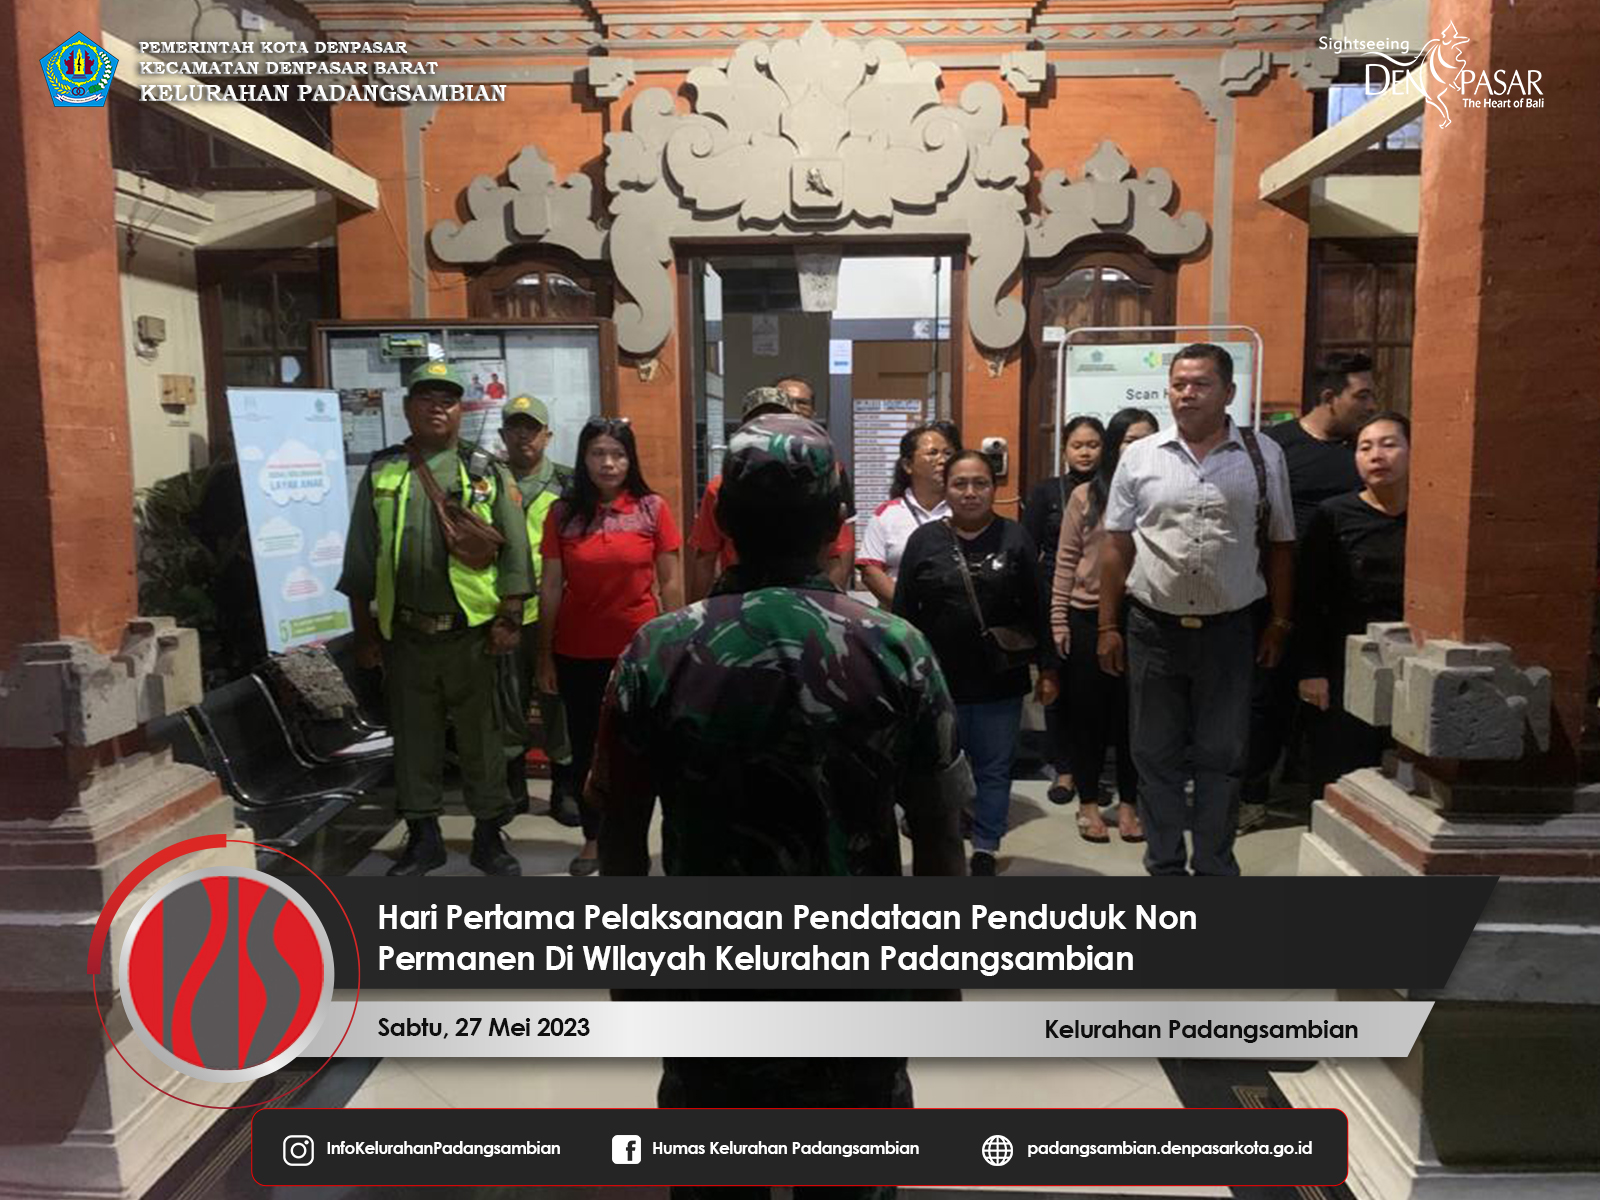 Hari Pertama Pelaksanaan Pendataan Penduduk Non Permanen Kelurahan Padangsambian